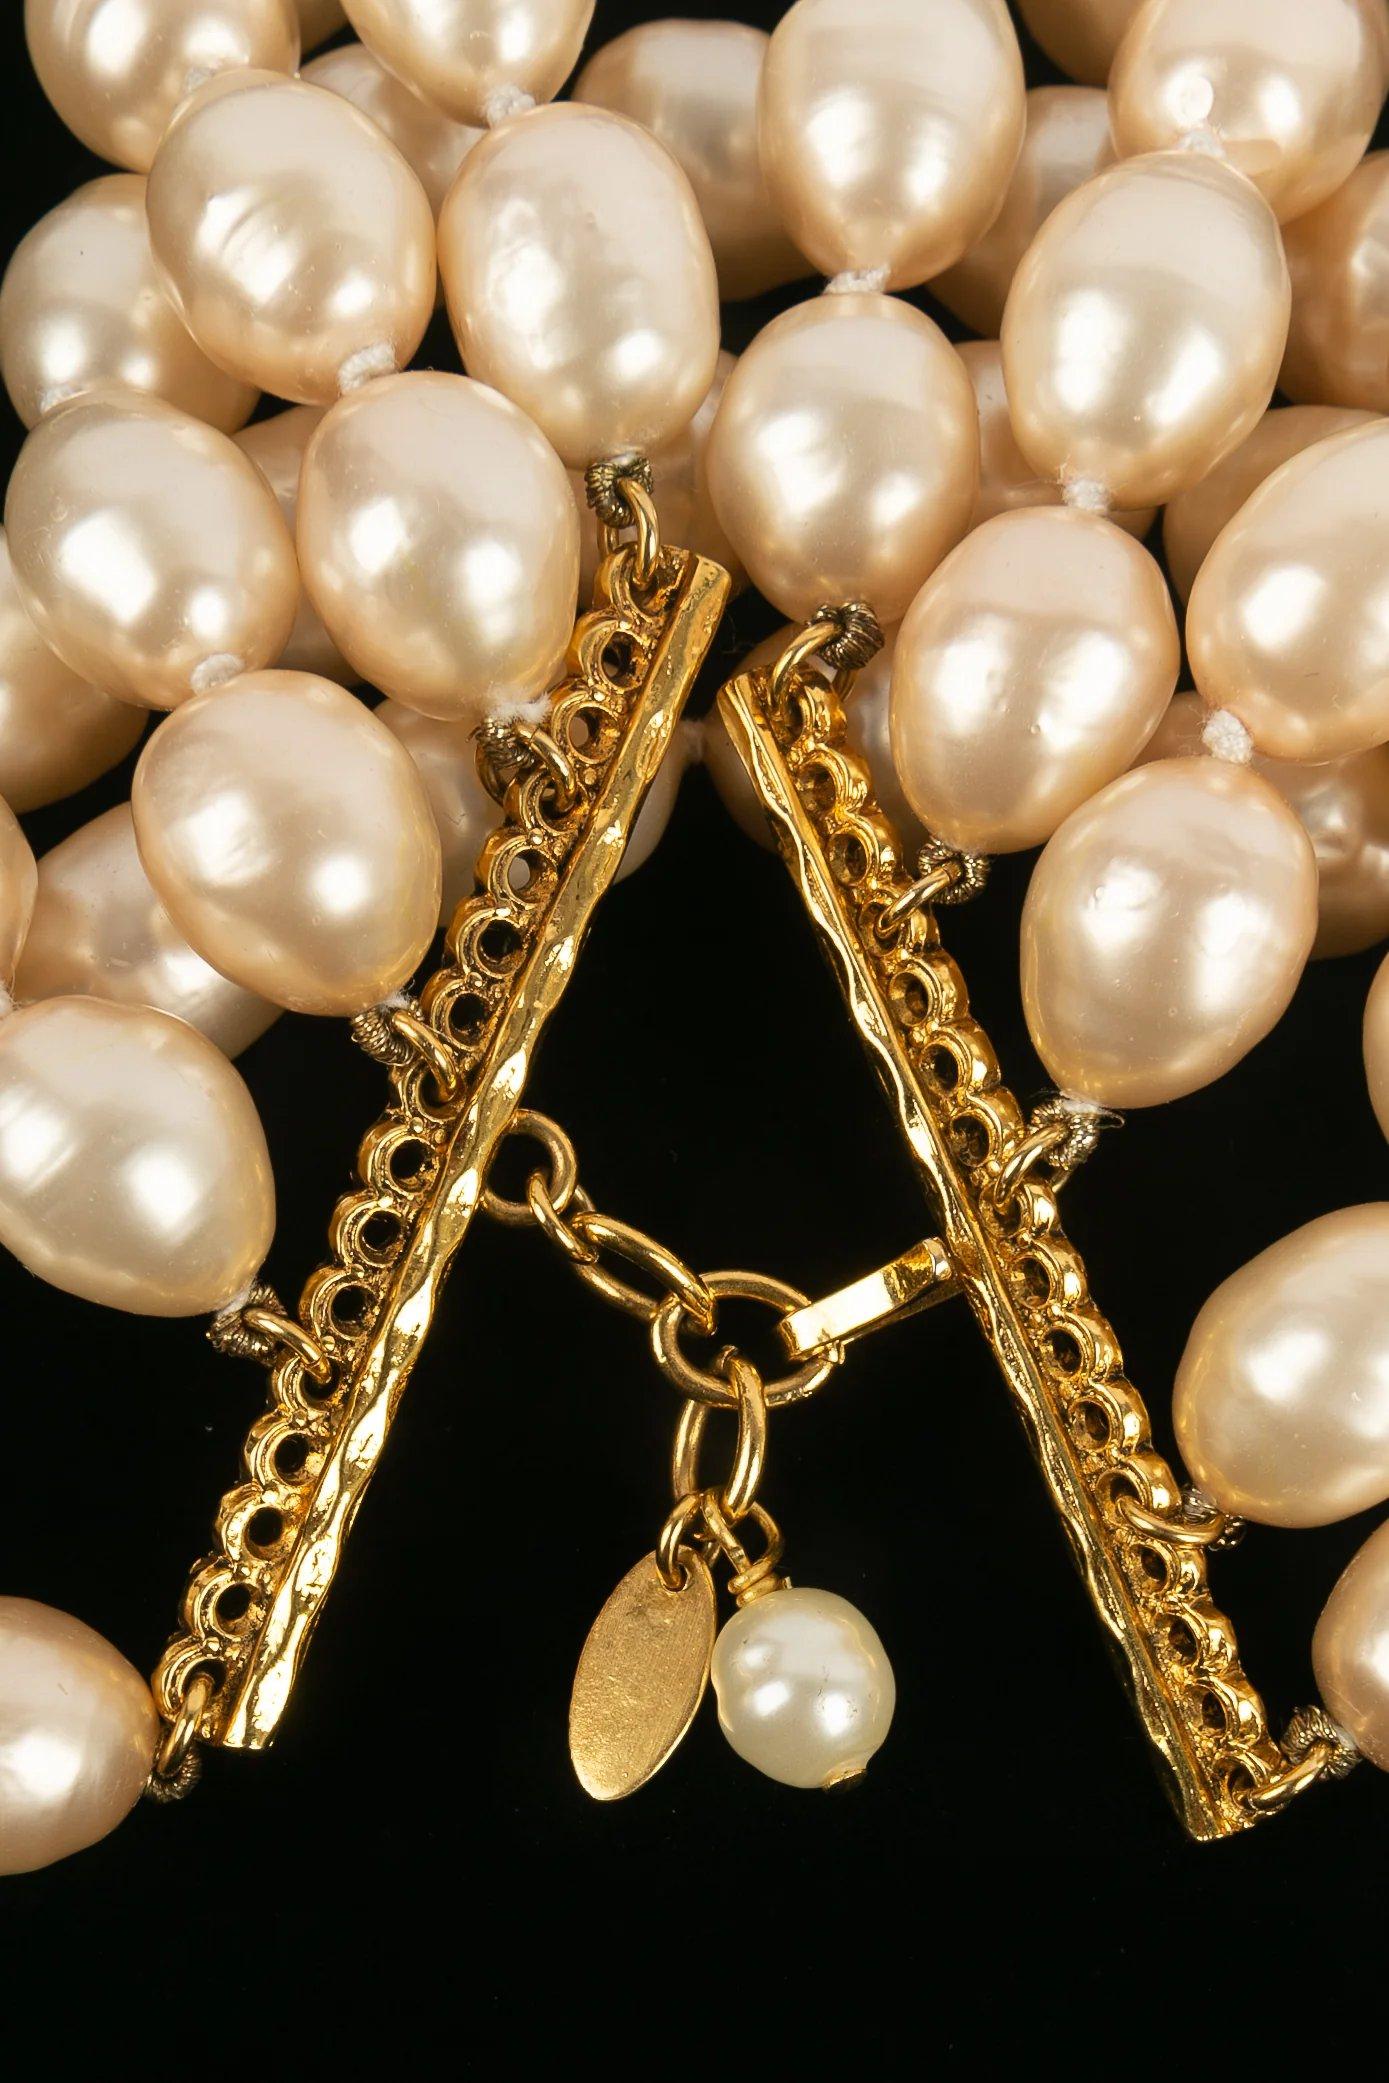 Chanel -(Fabriqué en France) Bracelet de perles Chanel.

Informations complémentaires :

Dimensions : I.L.A. 19-22 cm
Largeur : 6 cm
Condit : Très bon état.

Numéro de référence du vendeur : BRAB82